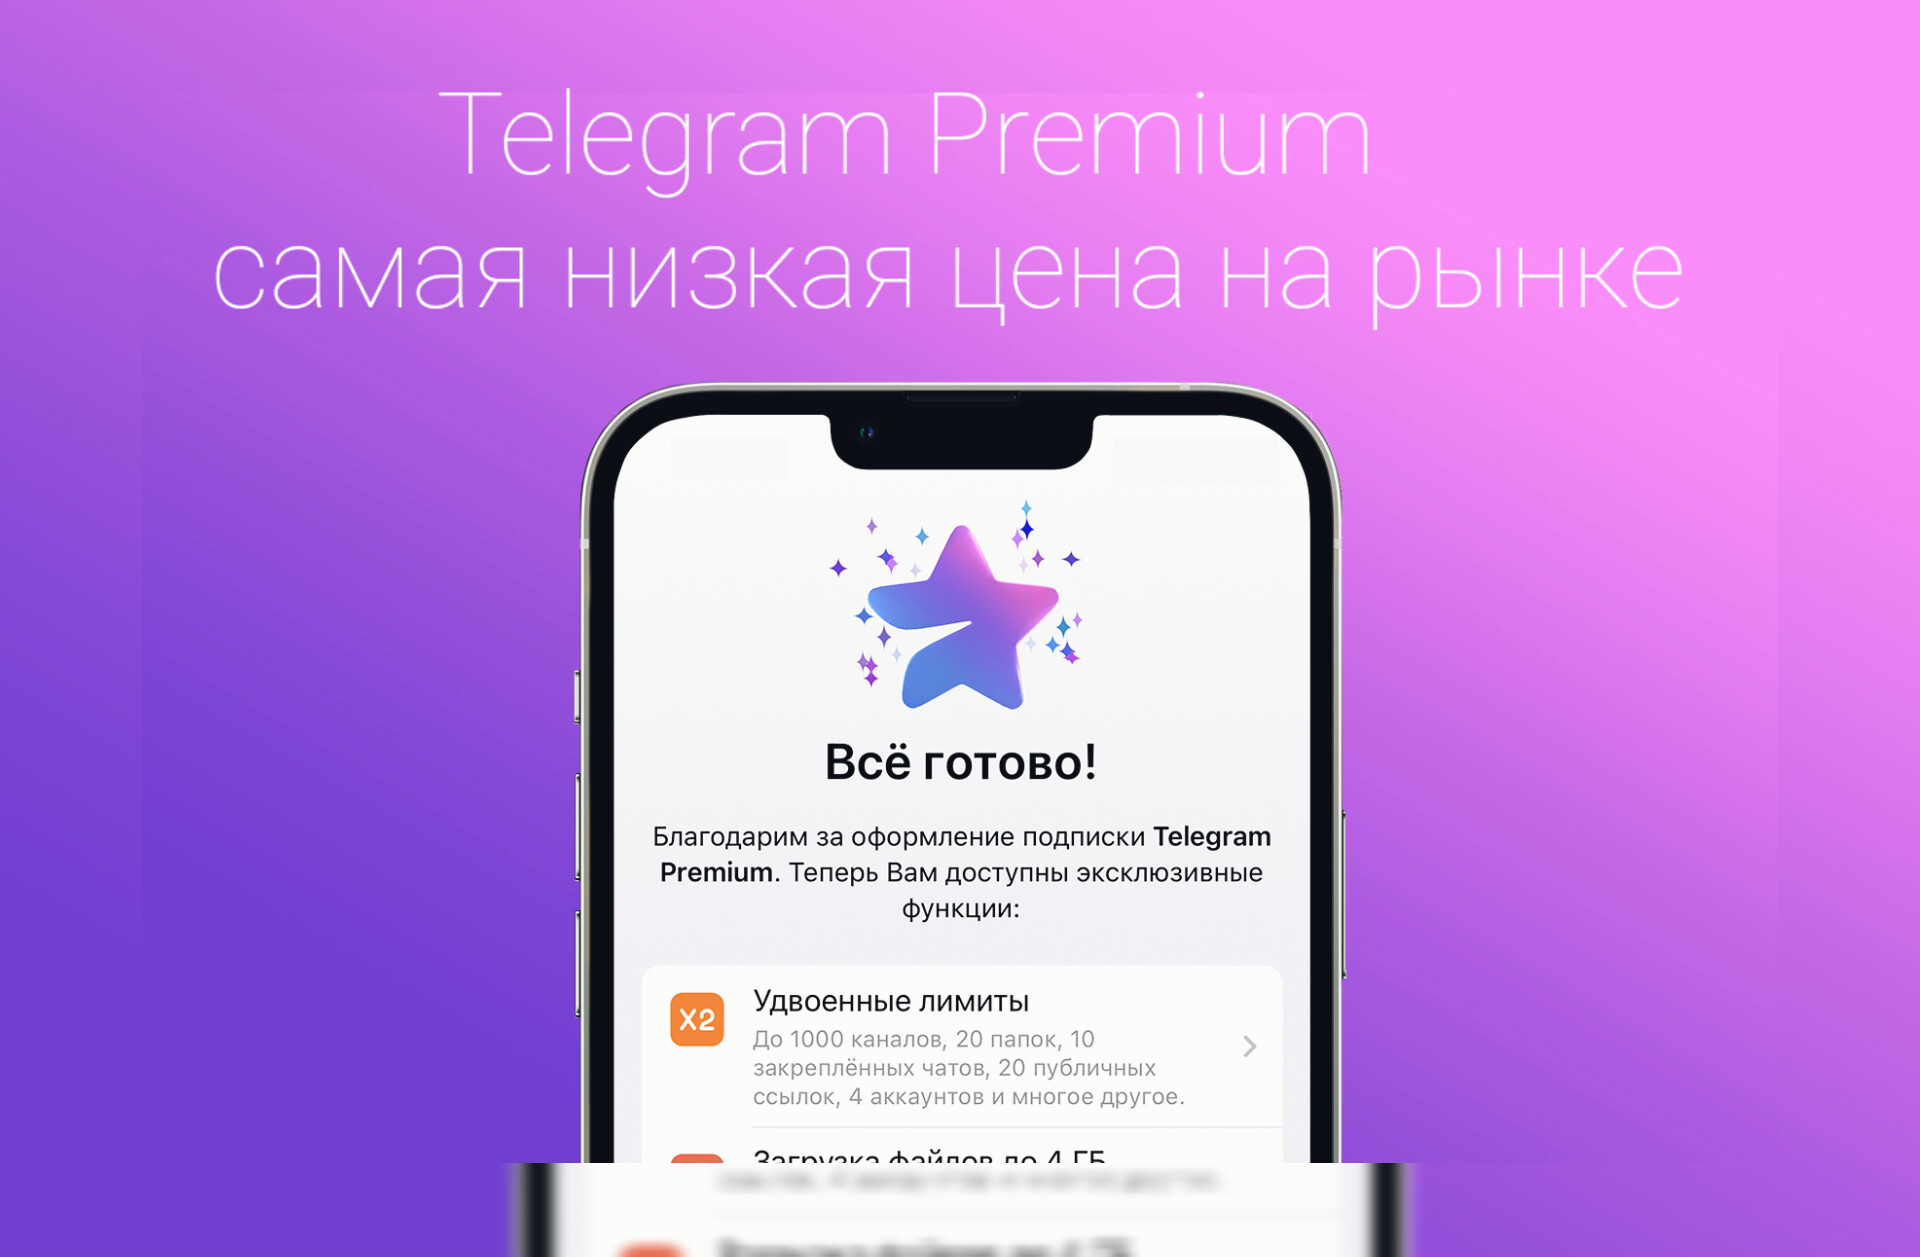 Тон купить телеграмм. Телеграм премиум. Премиум подписка телеграм. Платная подписка в телеграм. Telegram Premium Premium.